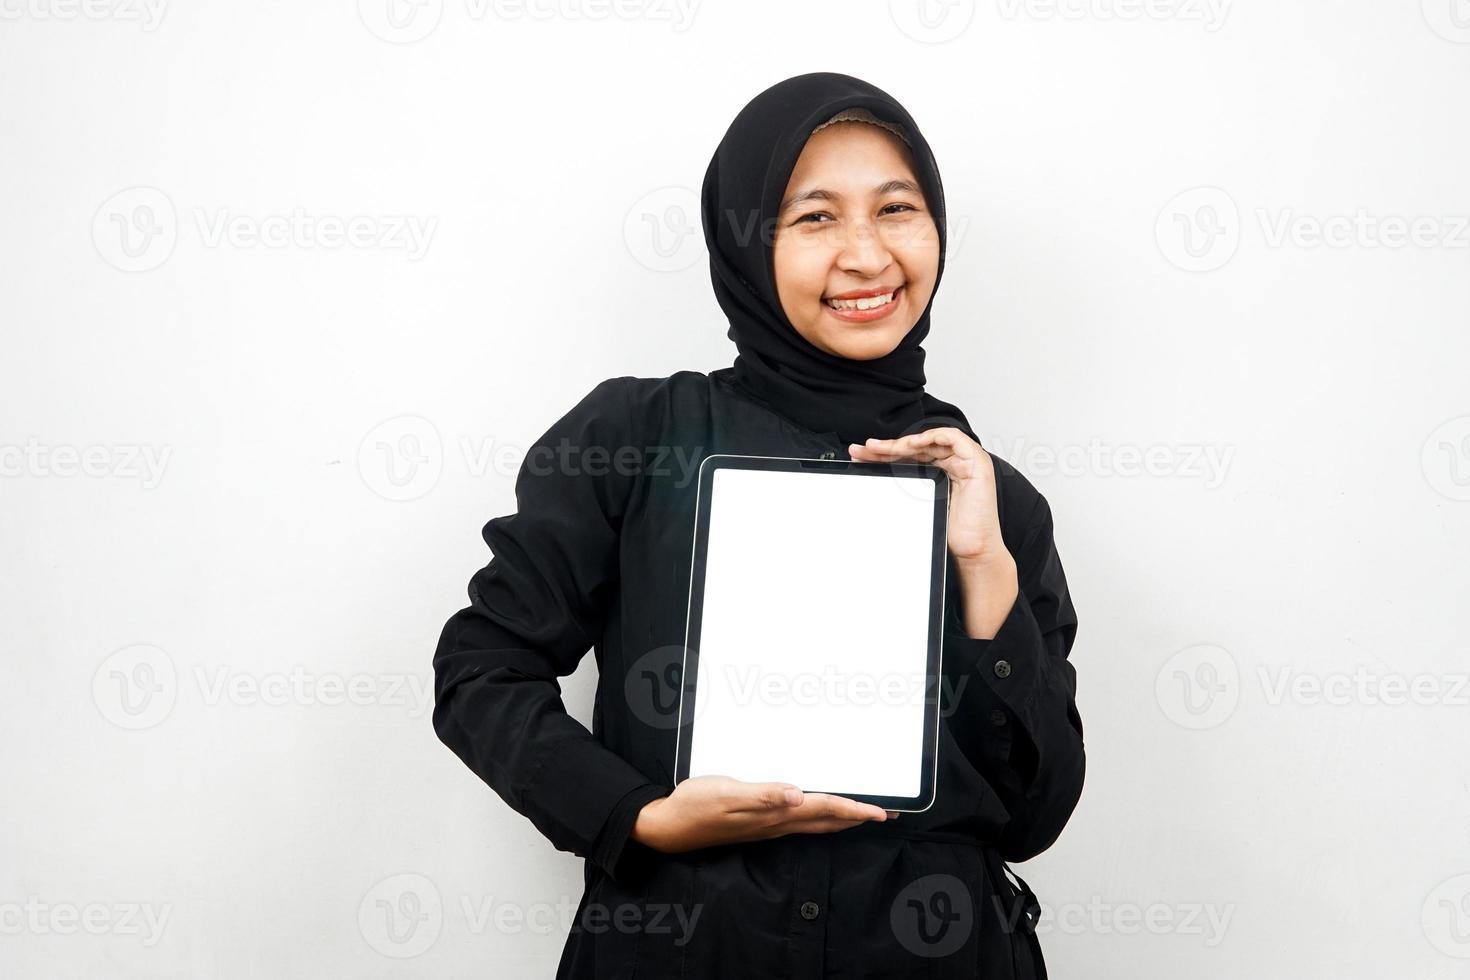 schöne junge asiatische muslimische frau, die lächelt, hand hält tablette mit weißem oder leerem bildschirm, fördert app, fördert produkt, präsentiert etwas, aufgeregt und fröhlich, einzeln auf weißem hintergrund foto